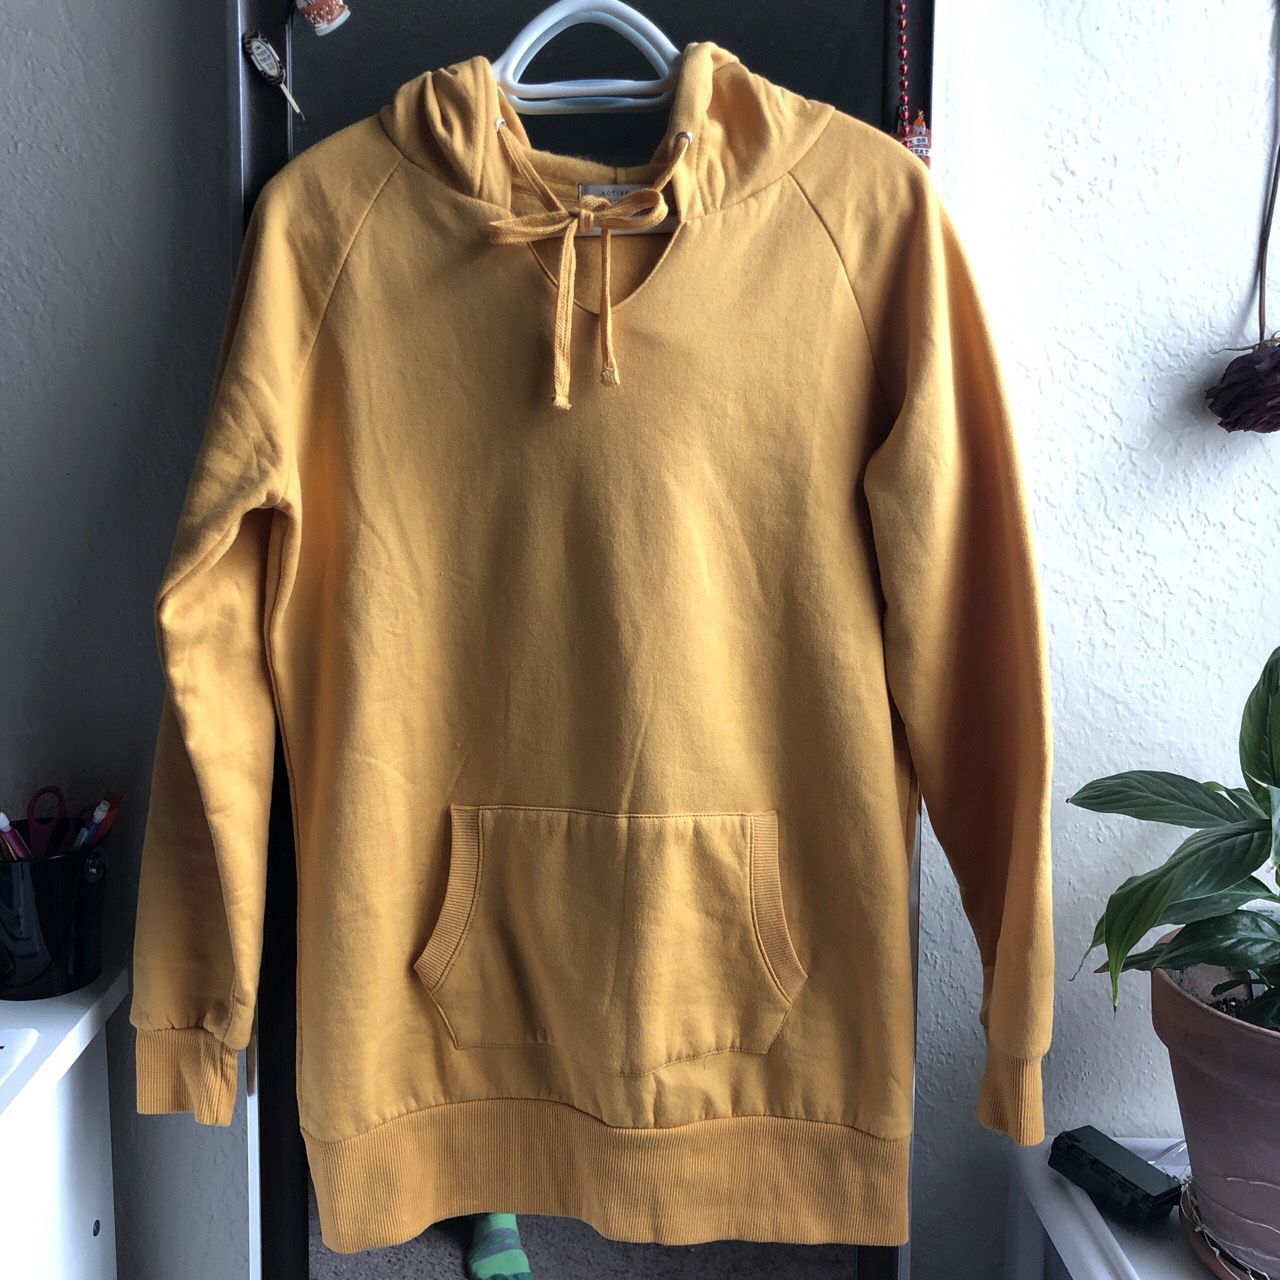 Yellow hoodie